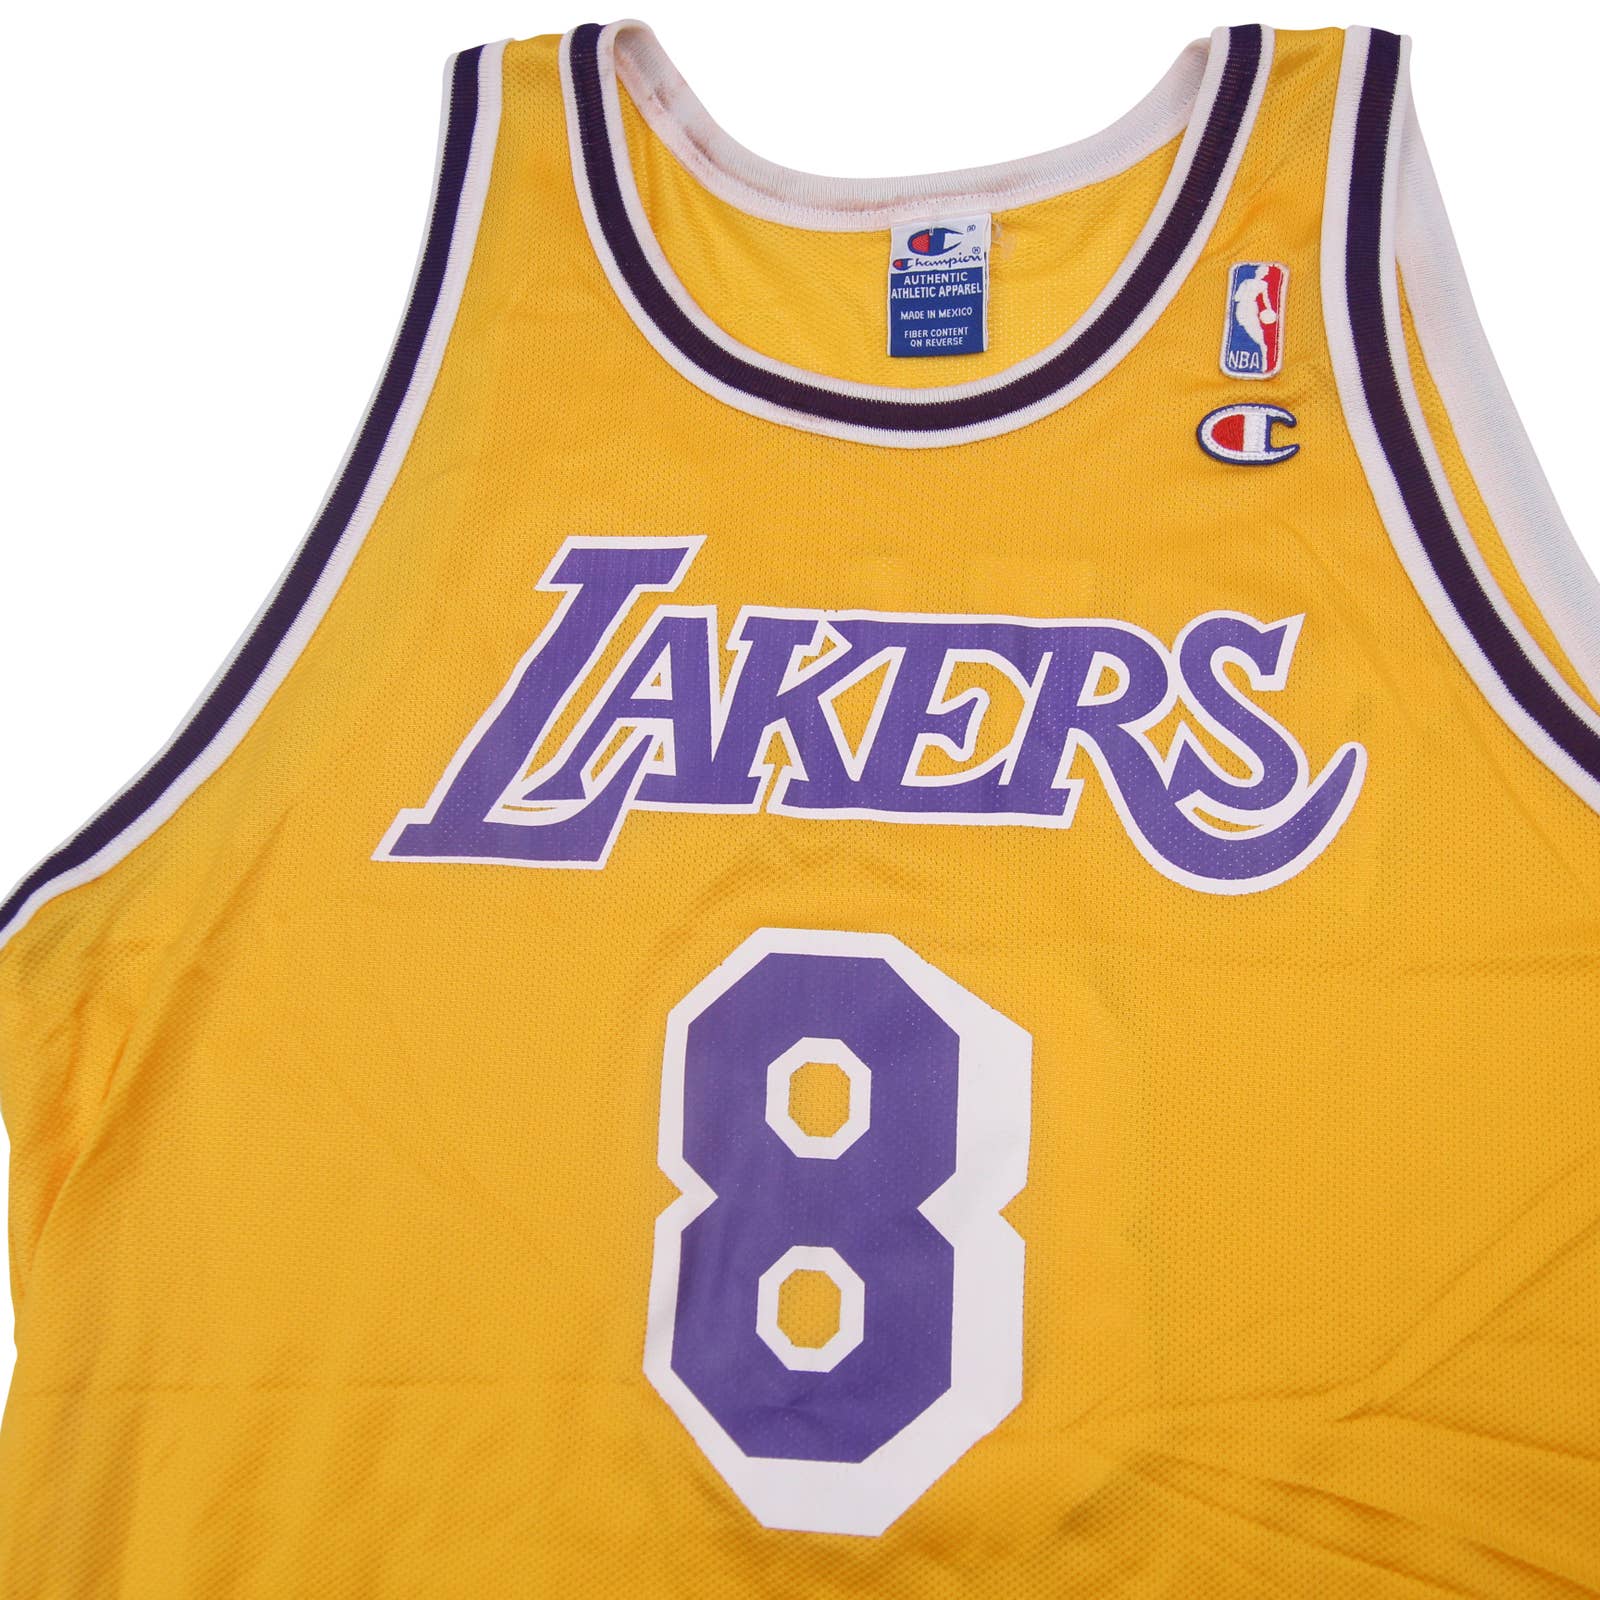 LA Lakers Kobe Bryant #8 NBA Basketball Champion Jersey size Large – Prince  Edward County T-Shirt Company